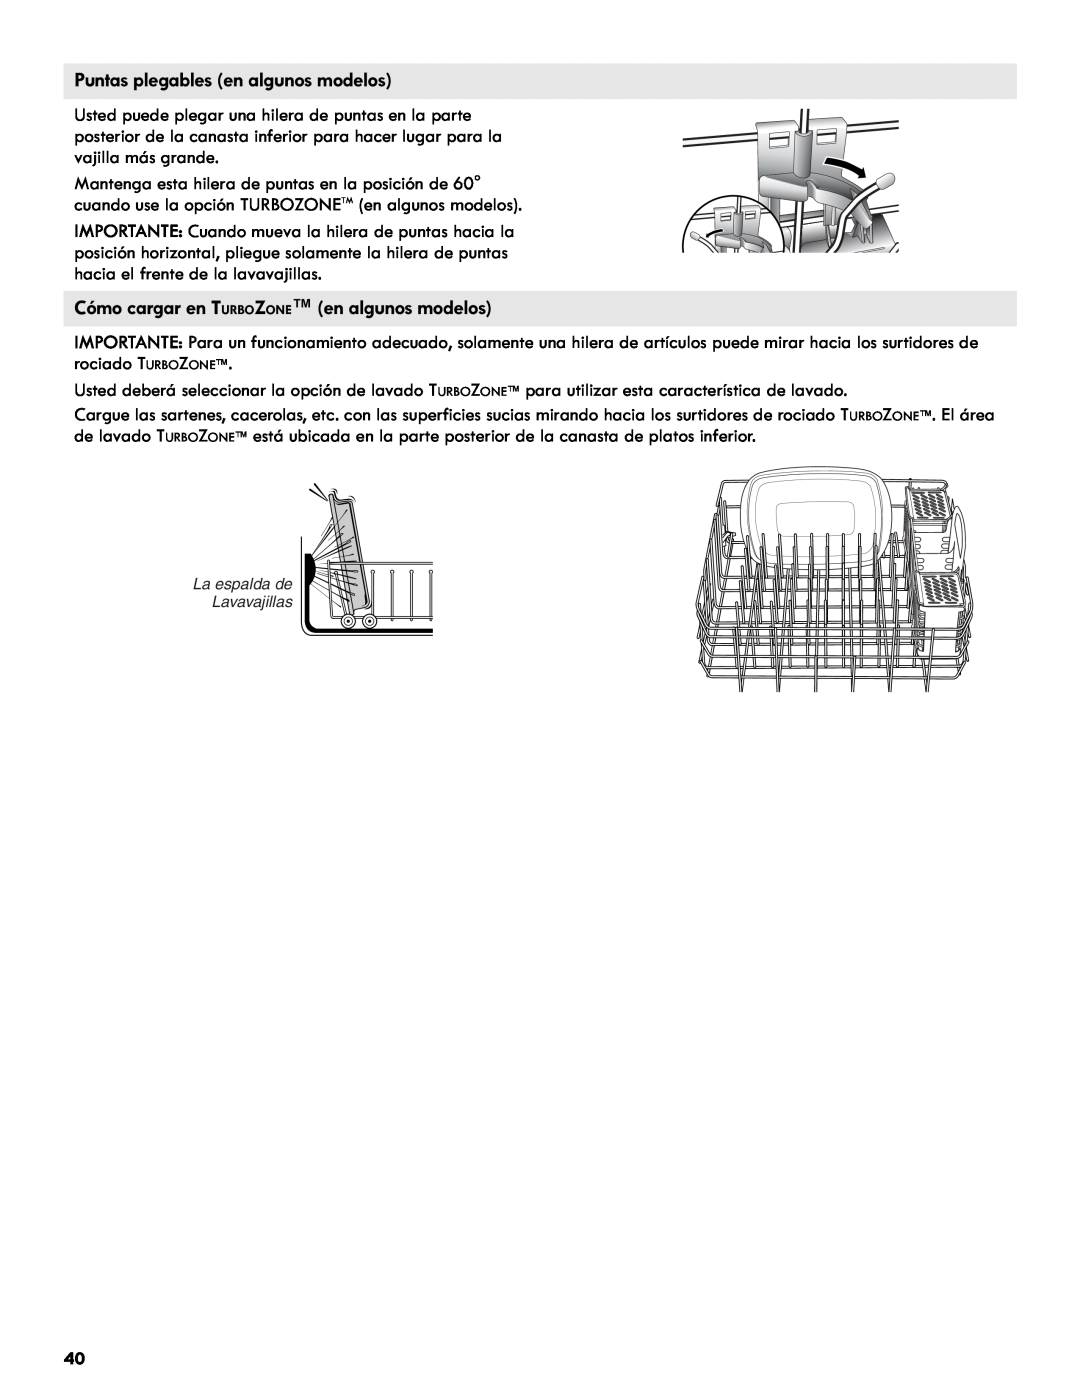 Kenmore 665.1327 manual Puntas plegables en algunos modelos, Cómo cargar en TURBOZONE en algunos modelos 